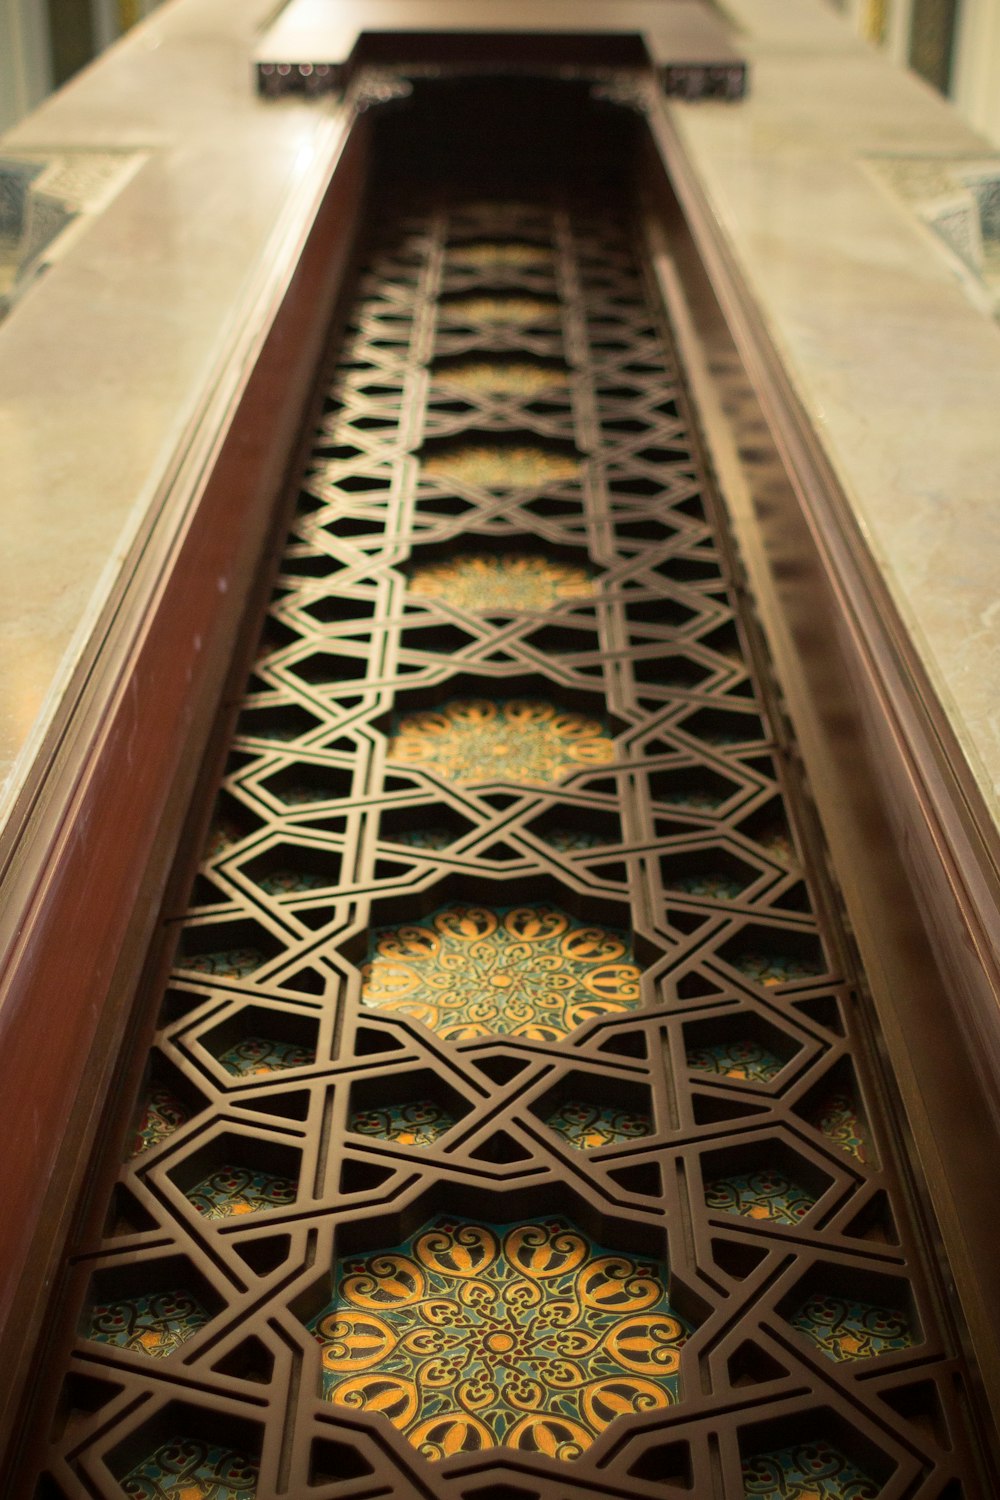 a close up of a decorative metal door